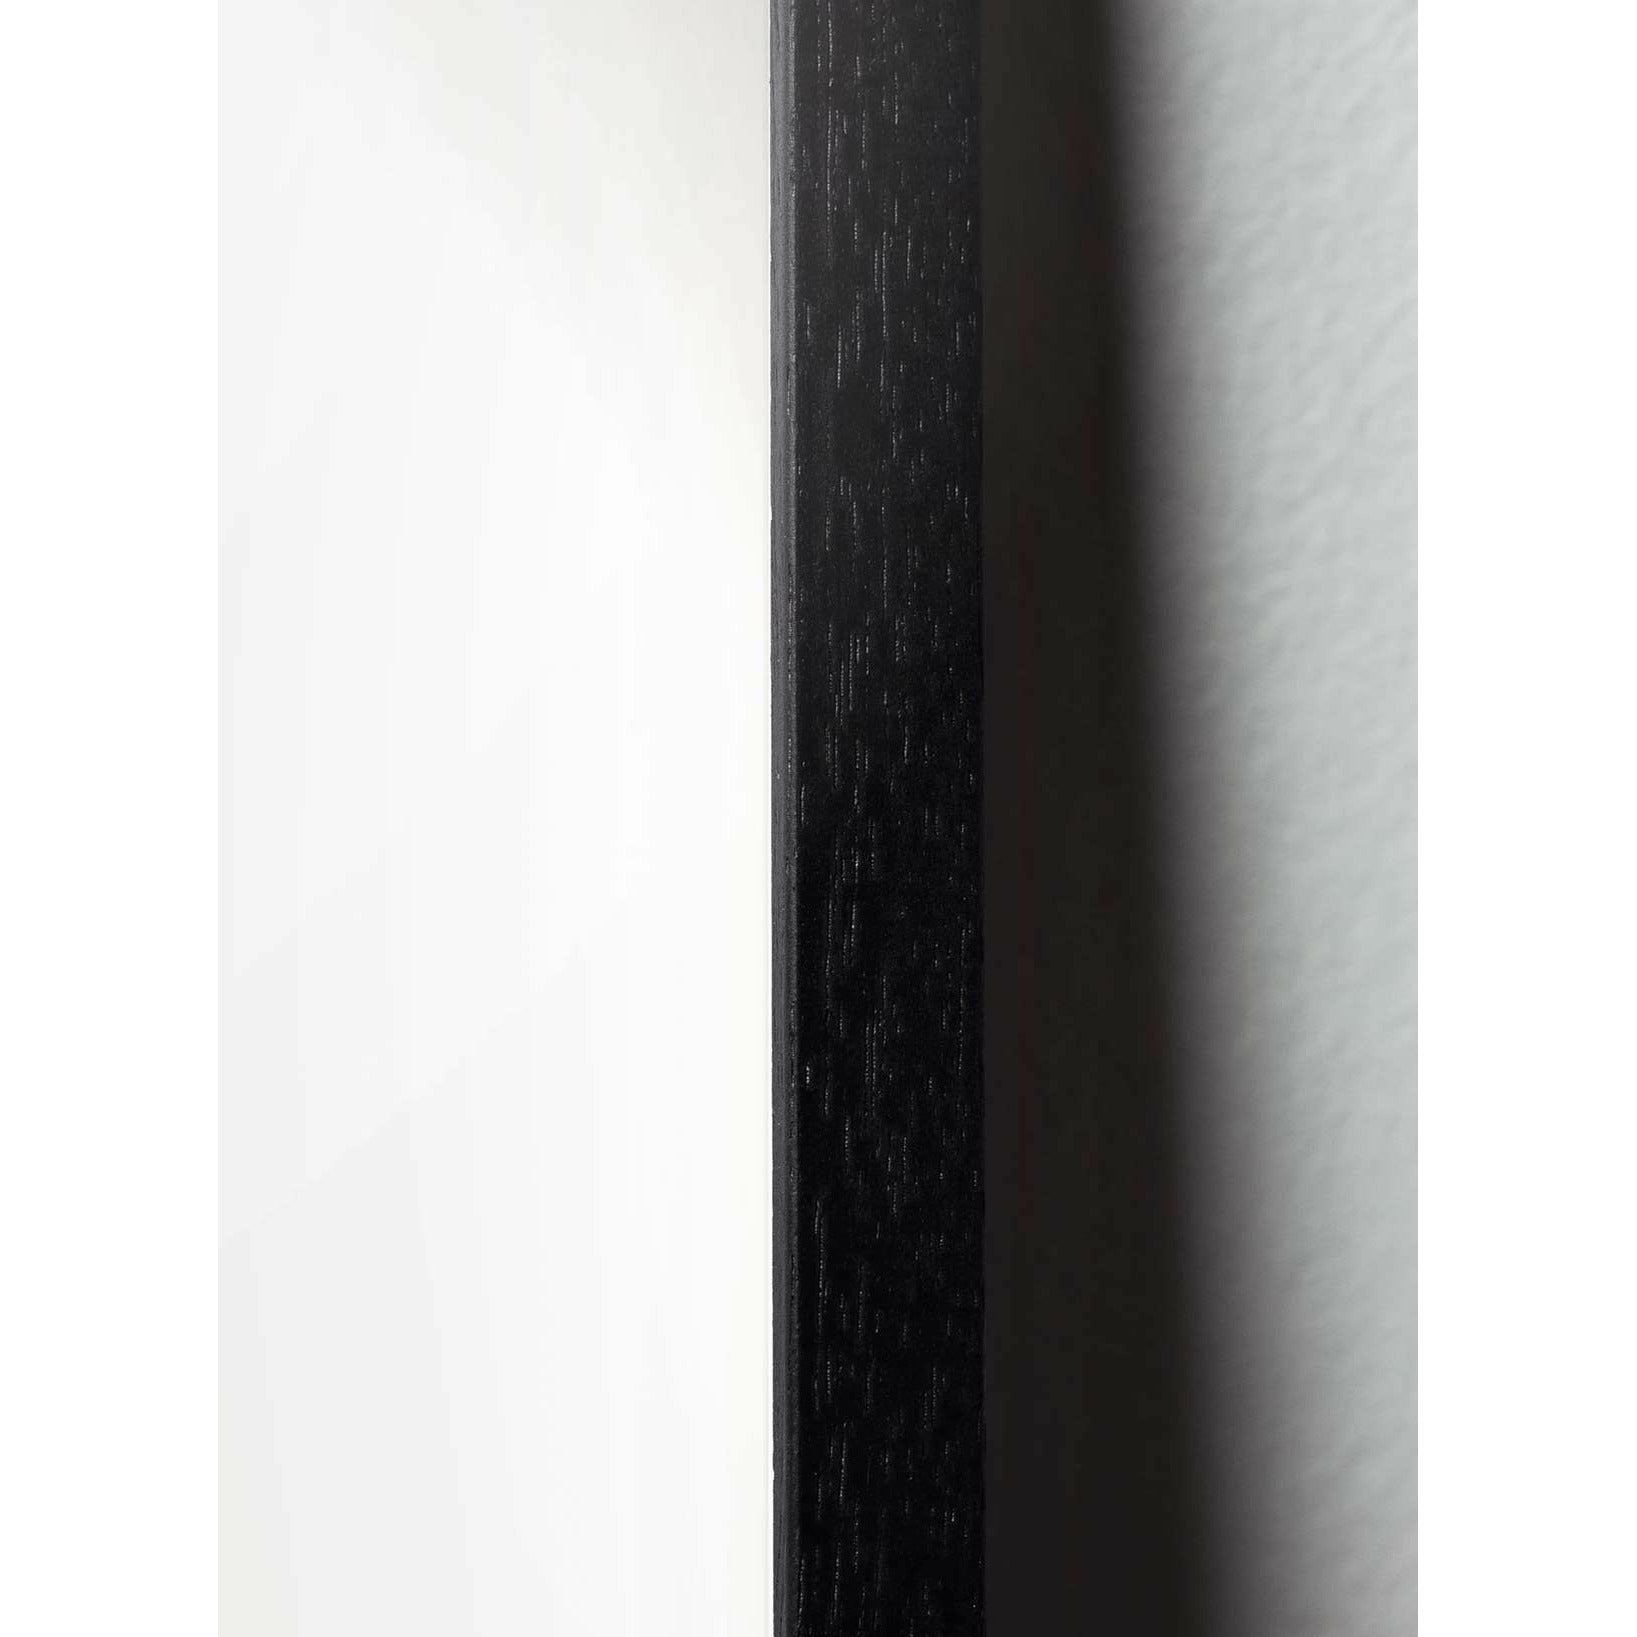 Póster de línea Swan de creación, marco en madera lacada en negro 70x100 cm, fondo azul